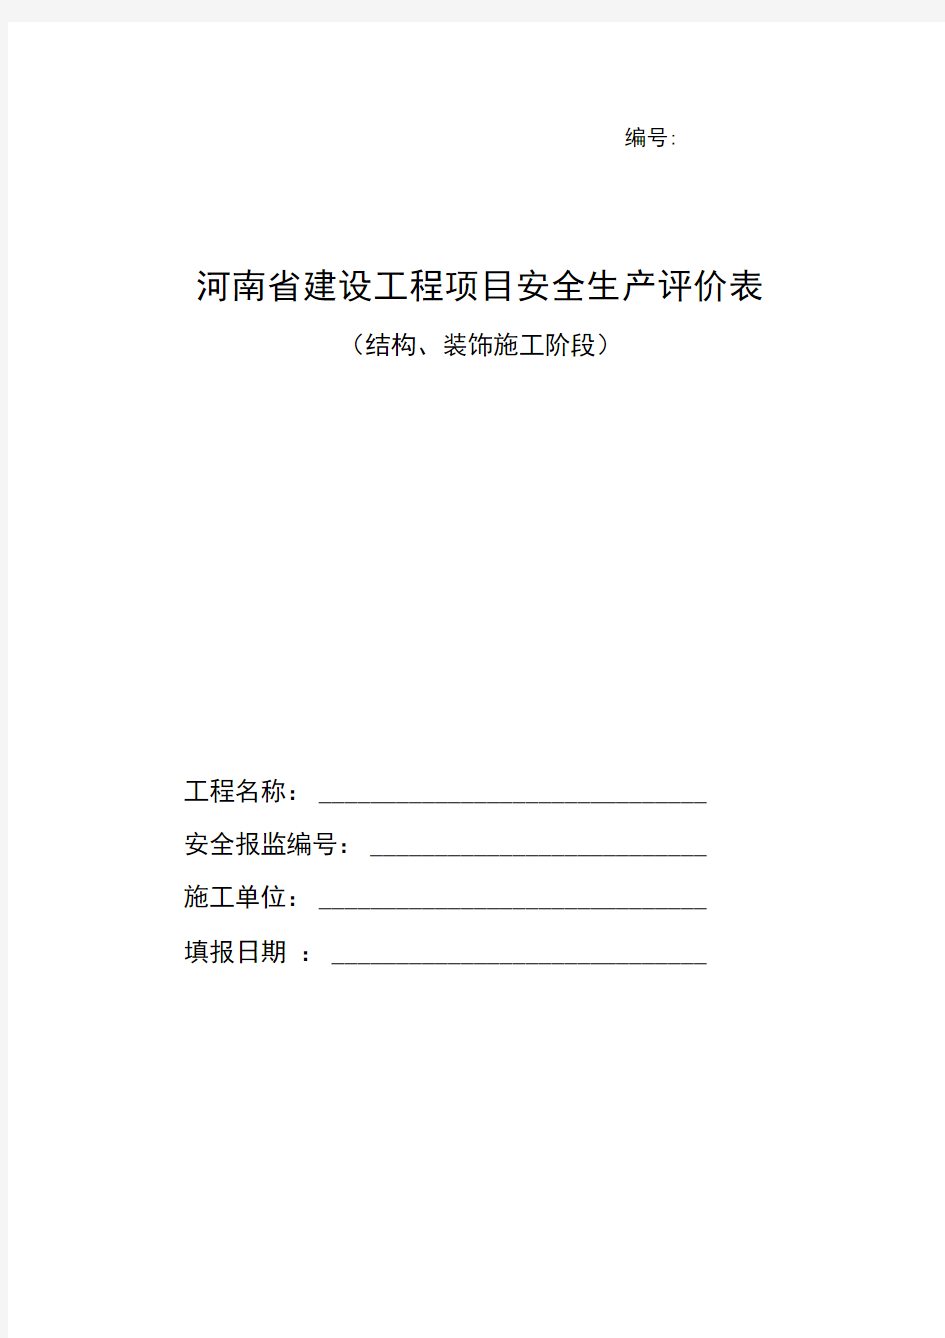 河南省建设工程项目安全生产评价表(结构、装饰阶段)